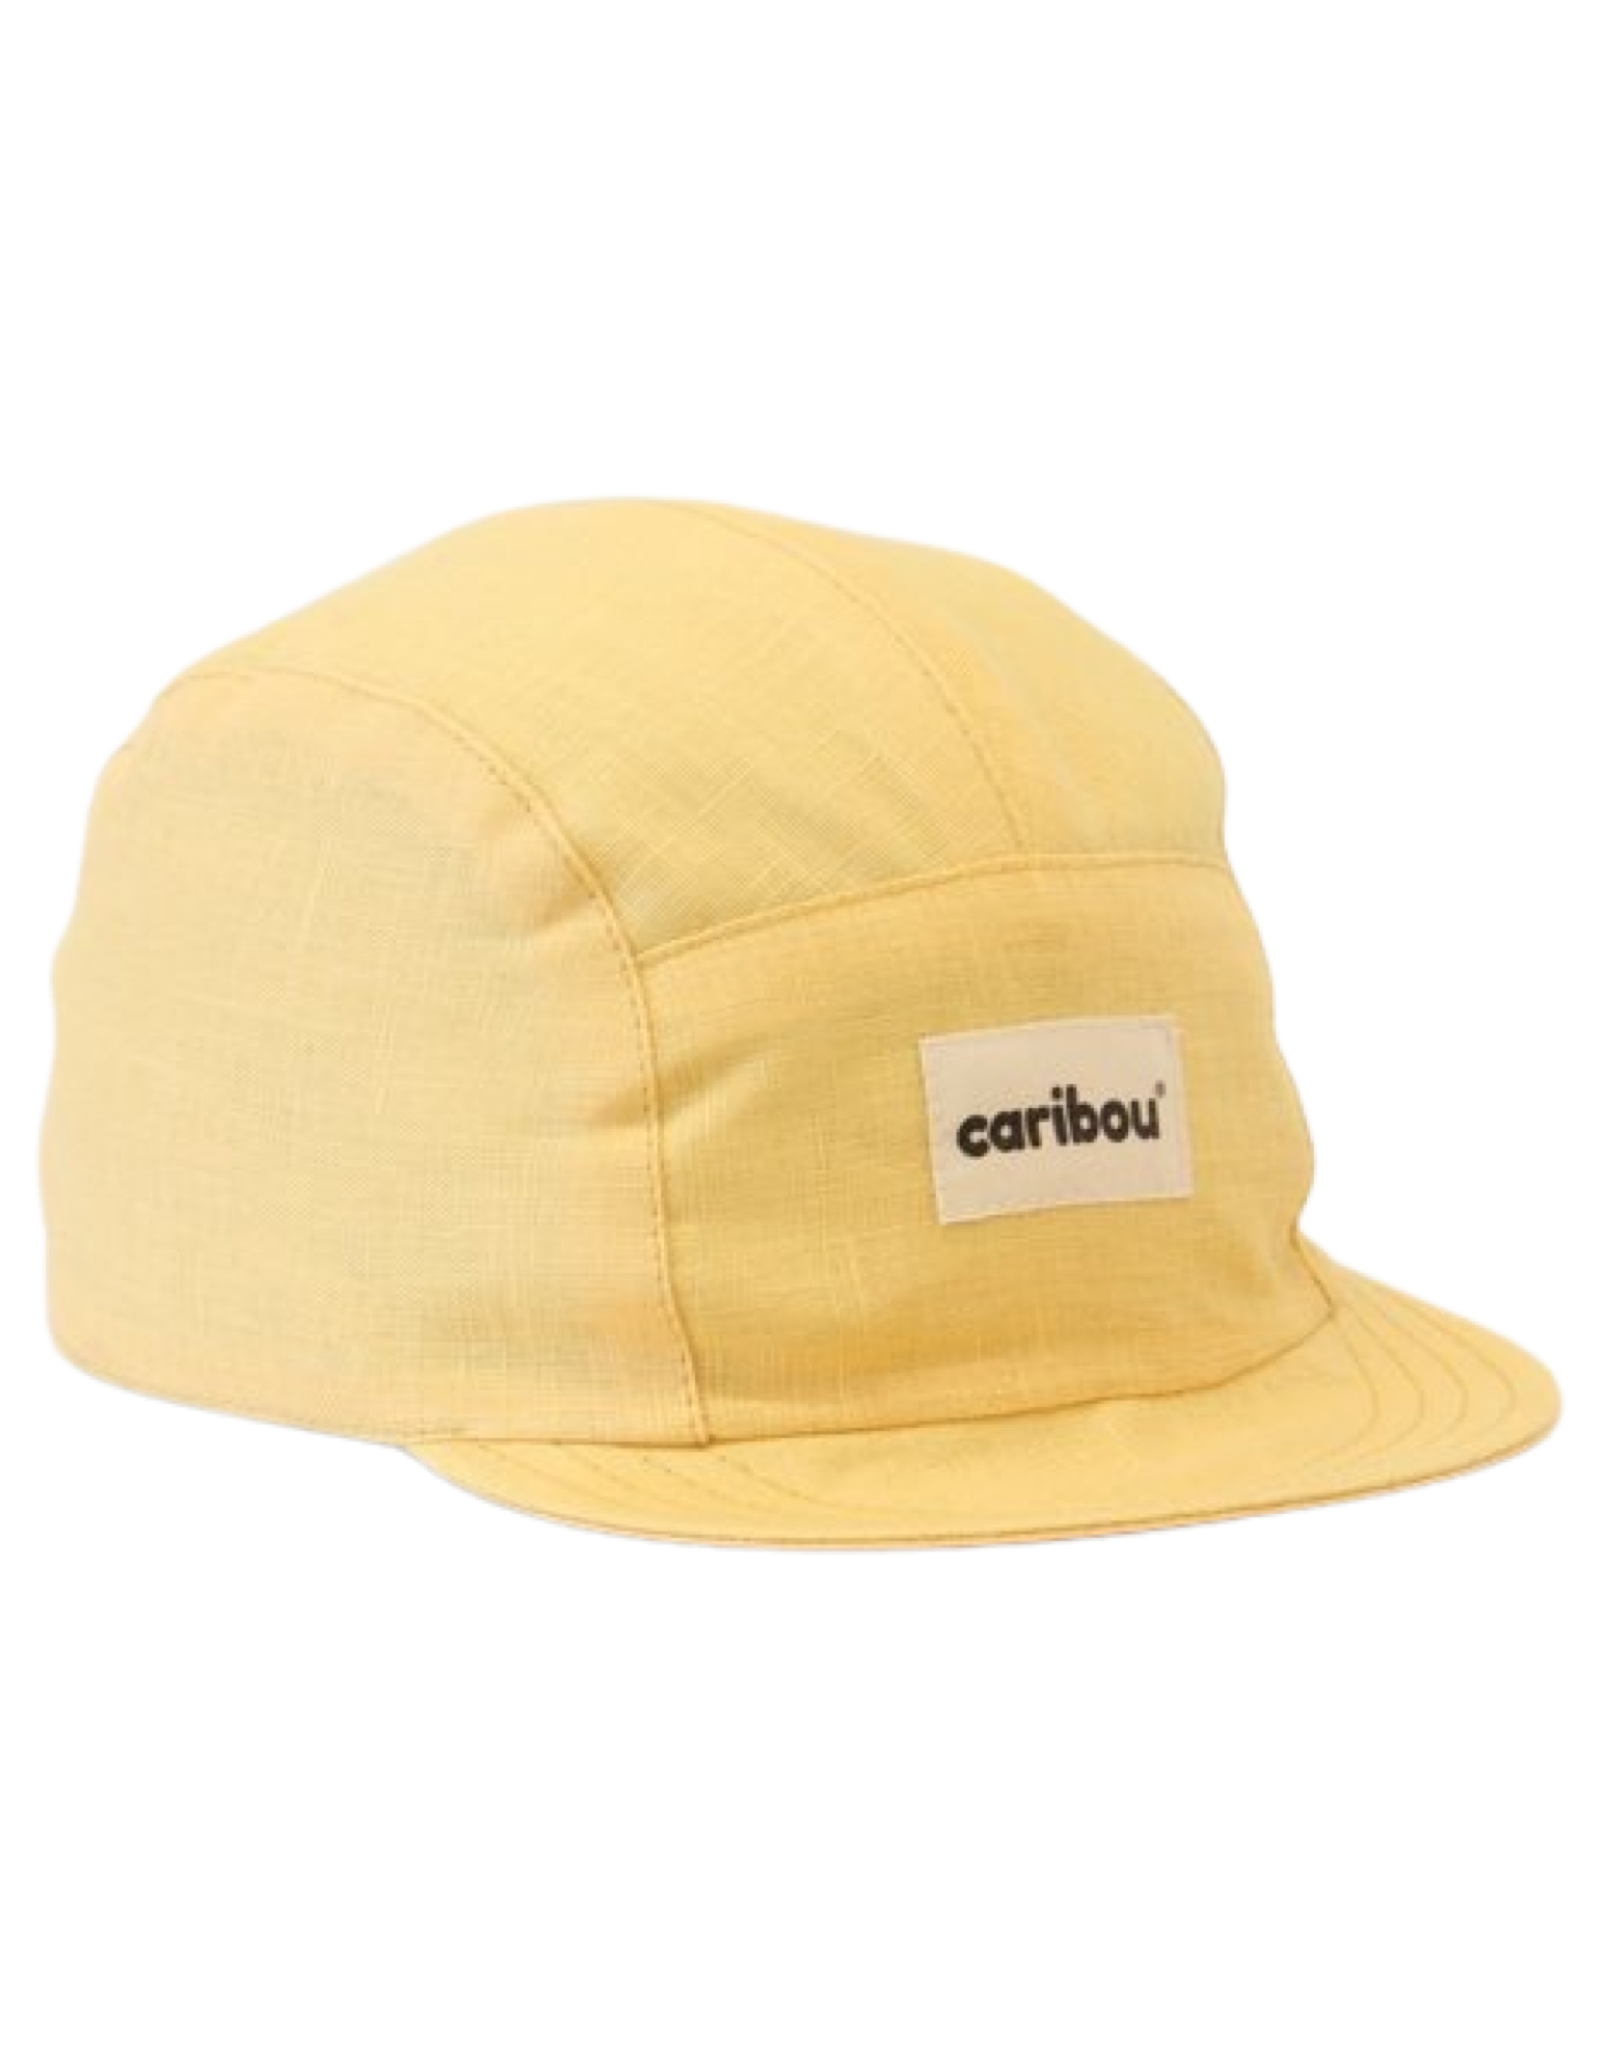 Caribou Linen Cap